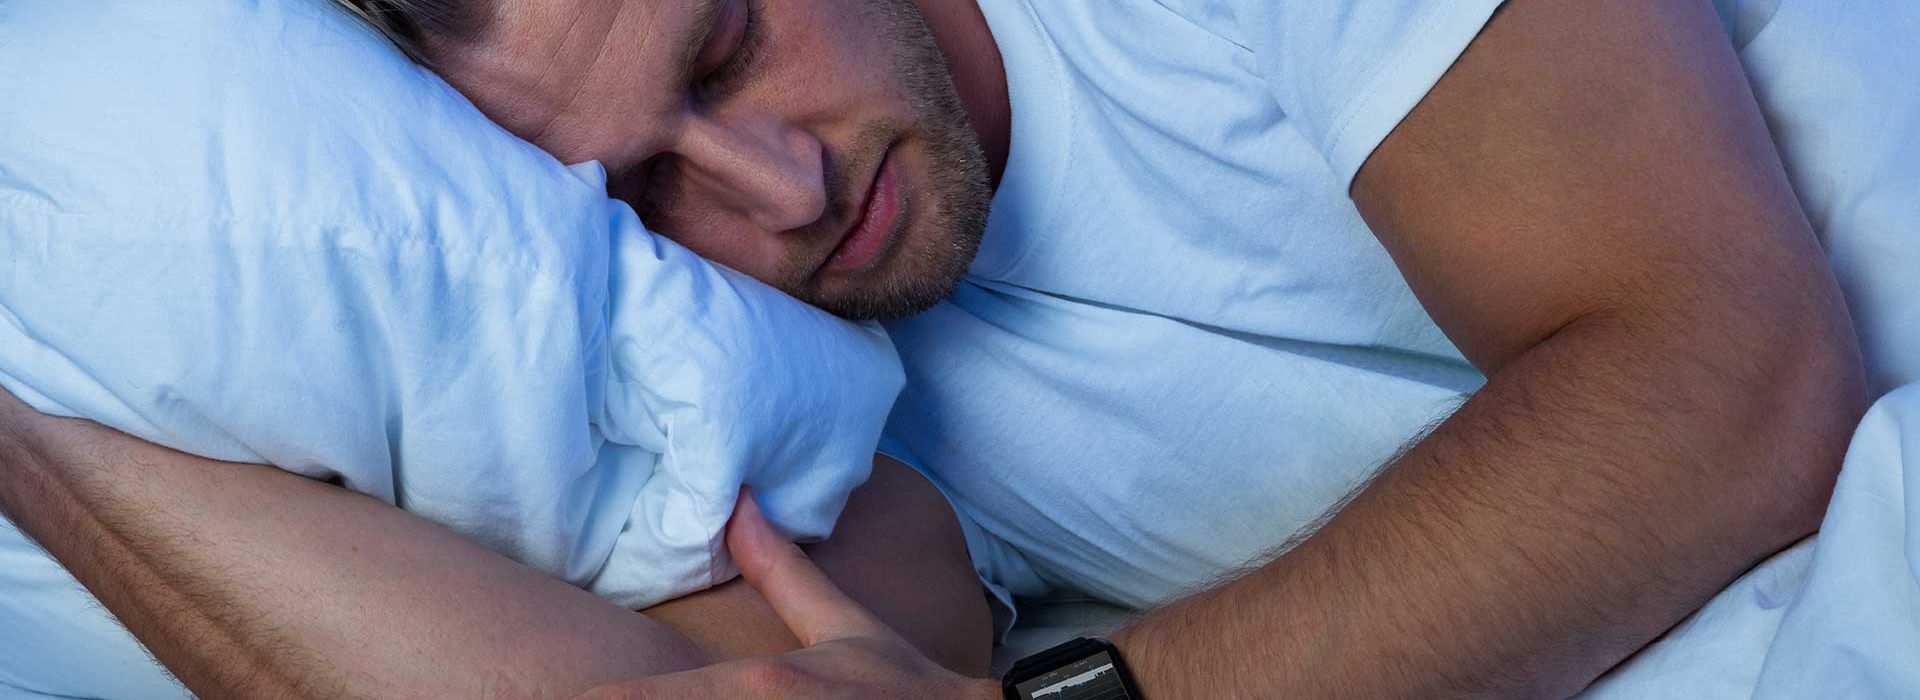 Ein Mann liegt schlafend im Bett und trägt dabei eine Pulsuhr zur Überwachung der Herzratenvariabilität zur Regeneration